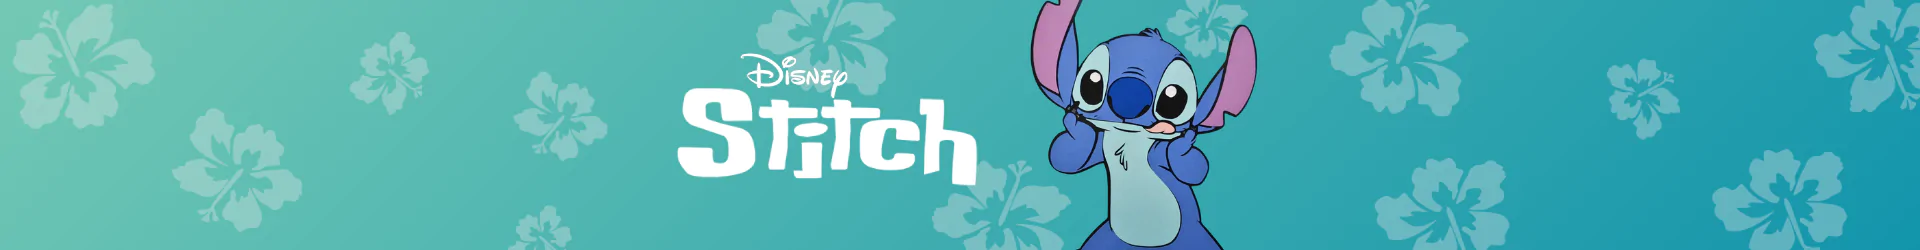 Stitch zoknik banner